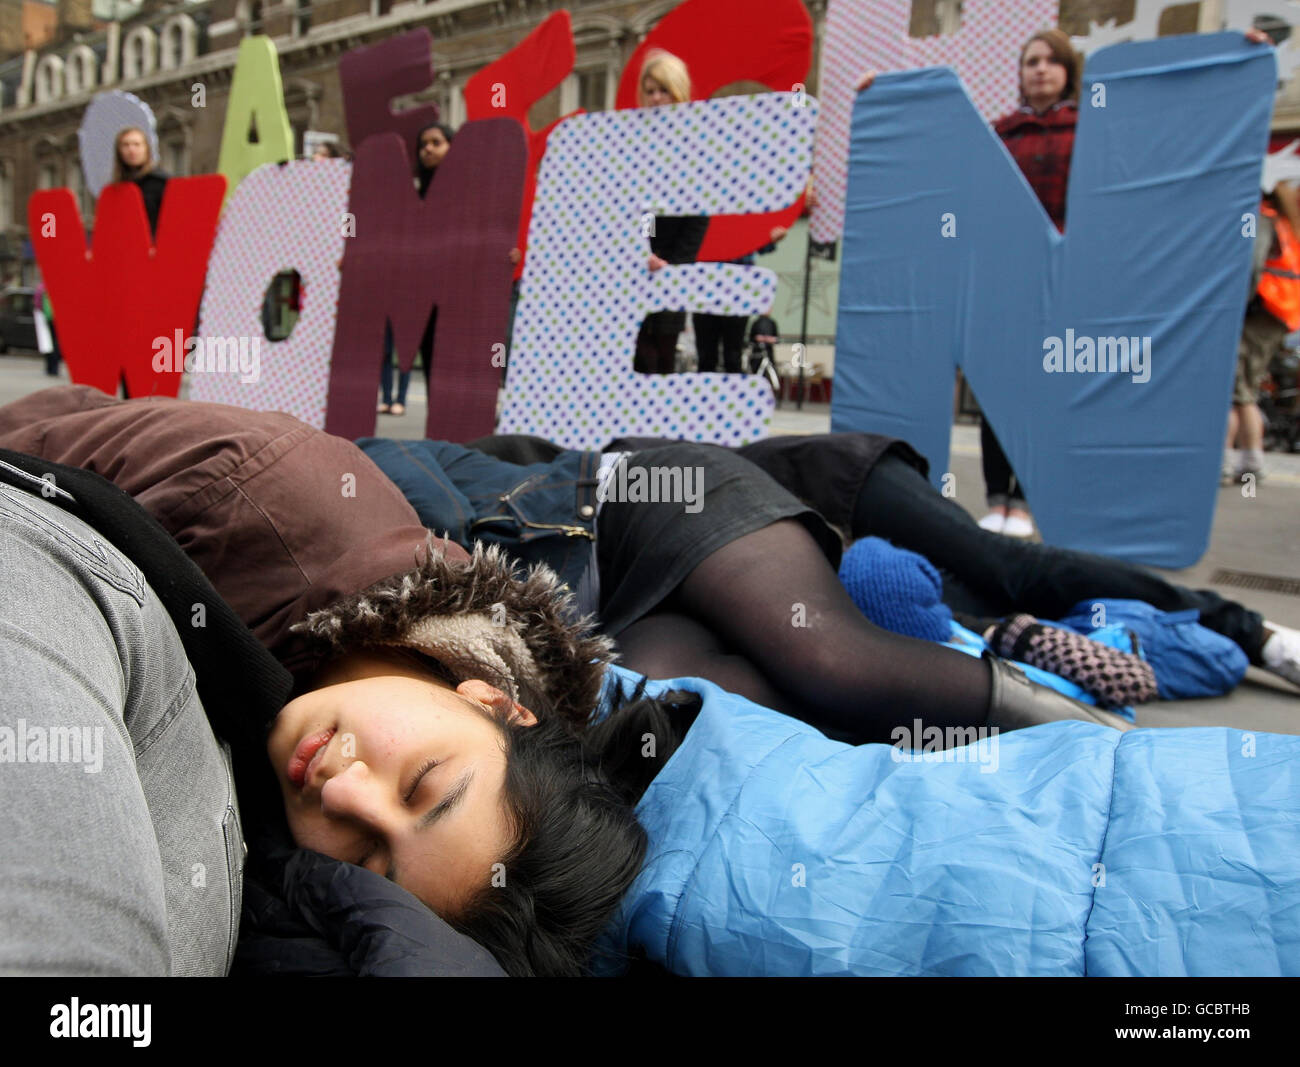 Demonstranten von Amnesty International inszenieren einen "Tod" einer Gruppe schwangerer Frauen, die jede Minute den Tod einer schwangeren Frau darstellen, als Teil eines Protestes, um das weltweite Versagen bei der Bekämpfung der Müttersterblichkeit vor der Liverpool Street Station im Zentrum Londons zu unterstreichen. Stockfoto